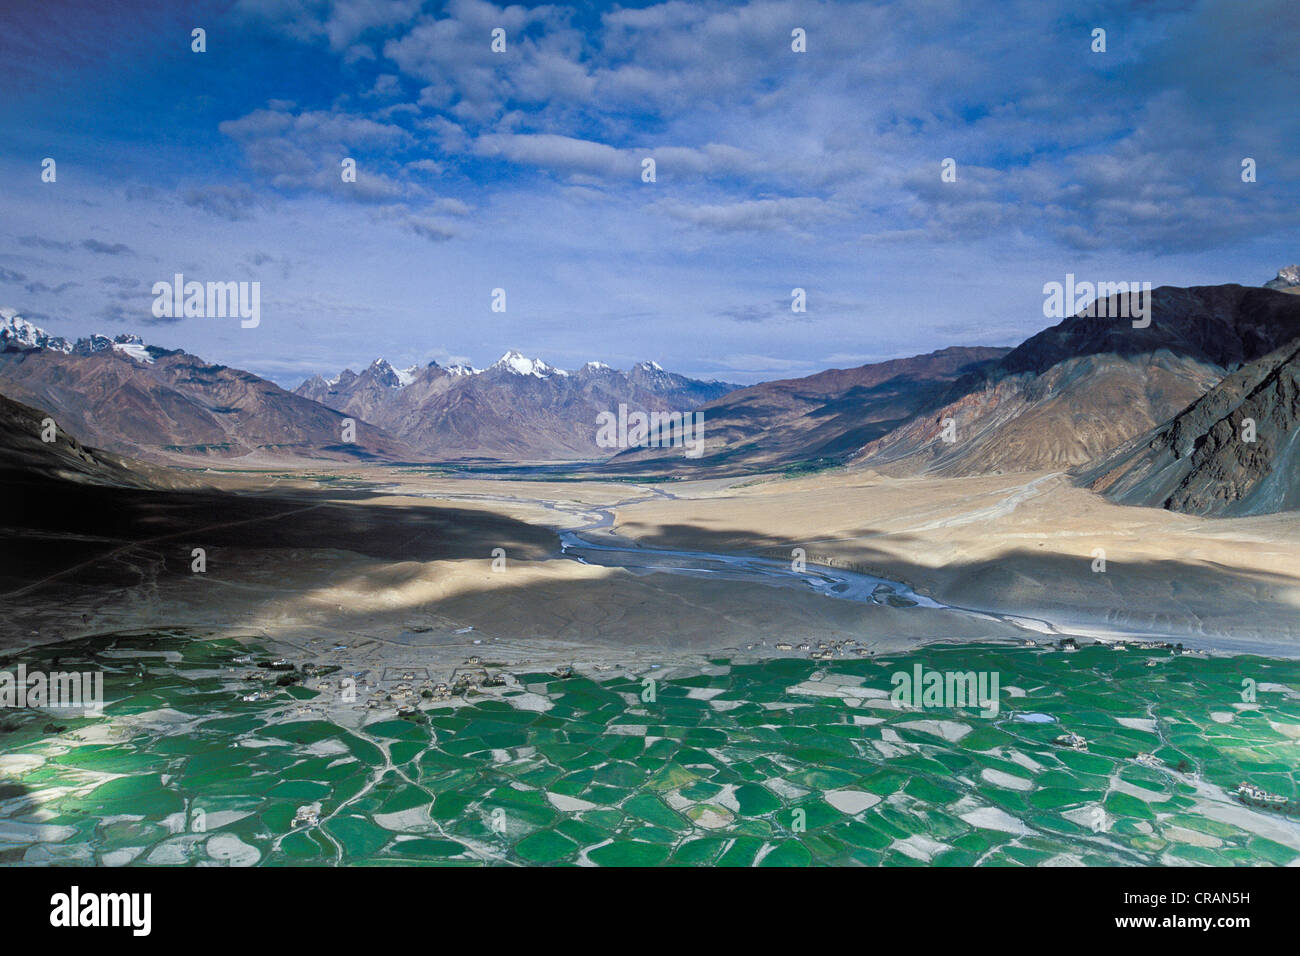 Domaines de Tongde près de Padum, Zanskar, Ladakh, Himalaya indien, le Jammu-et-Cachemire, l'Inde du nord, Inde, Asie Banque D'Images